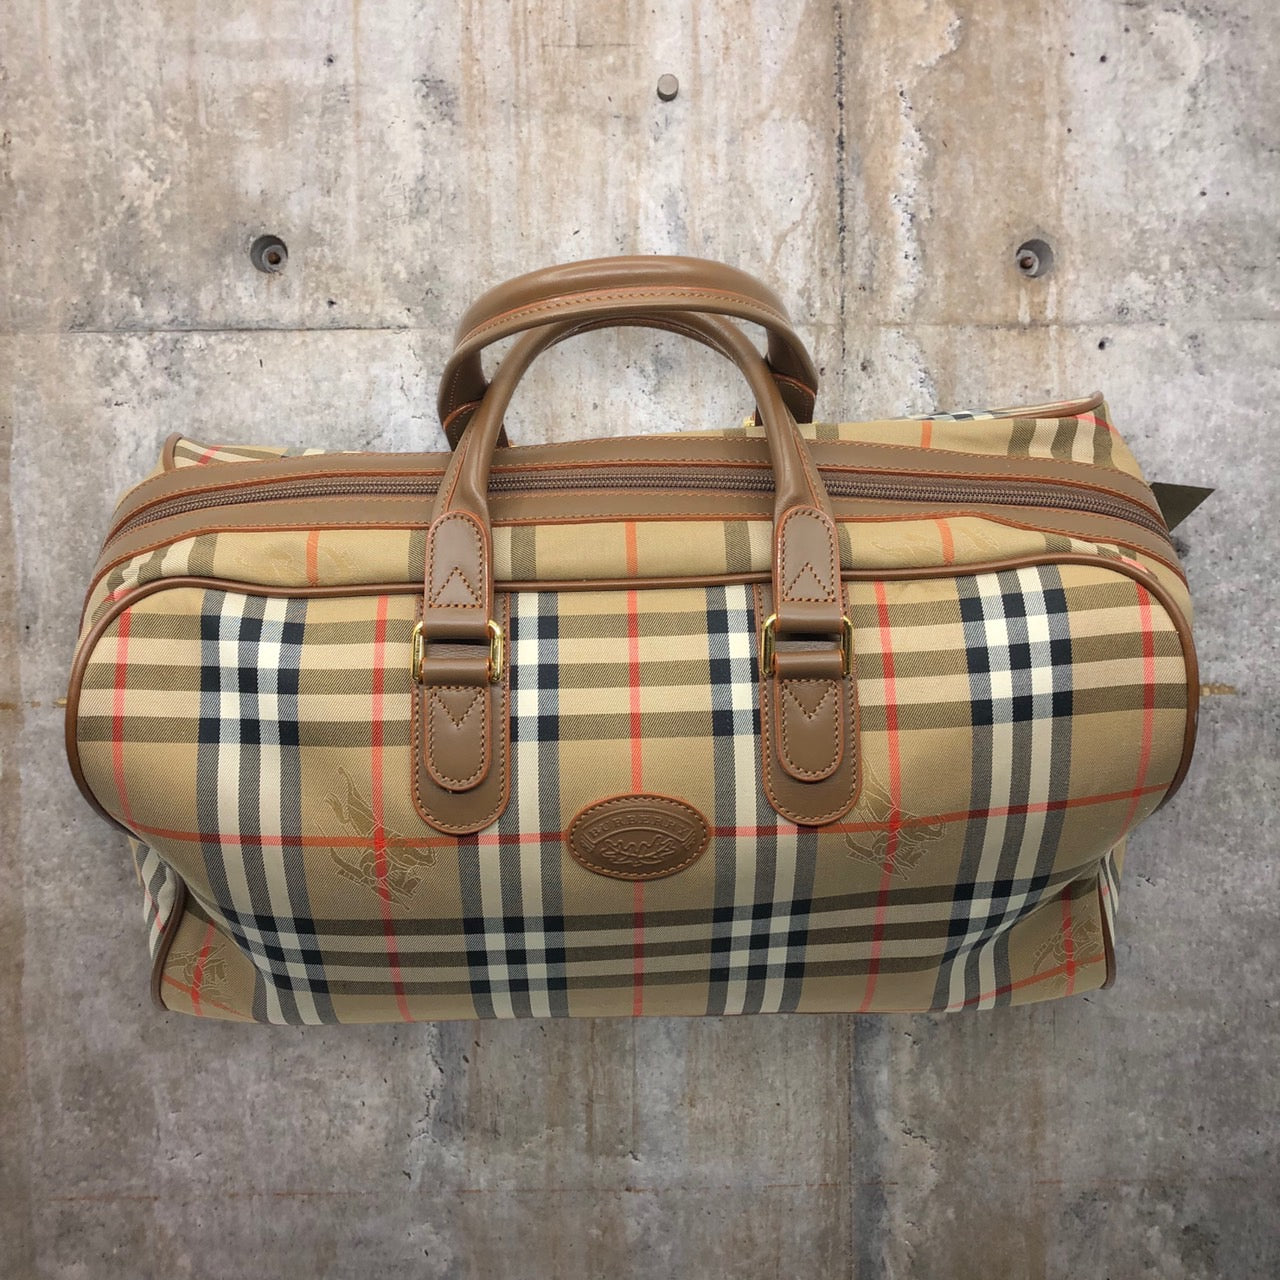 BURBERRY(バーバリー) ロゴノヴァチェックボストンバッグ/旅行鞄 